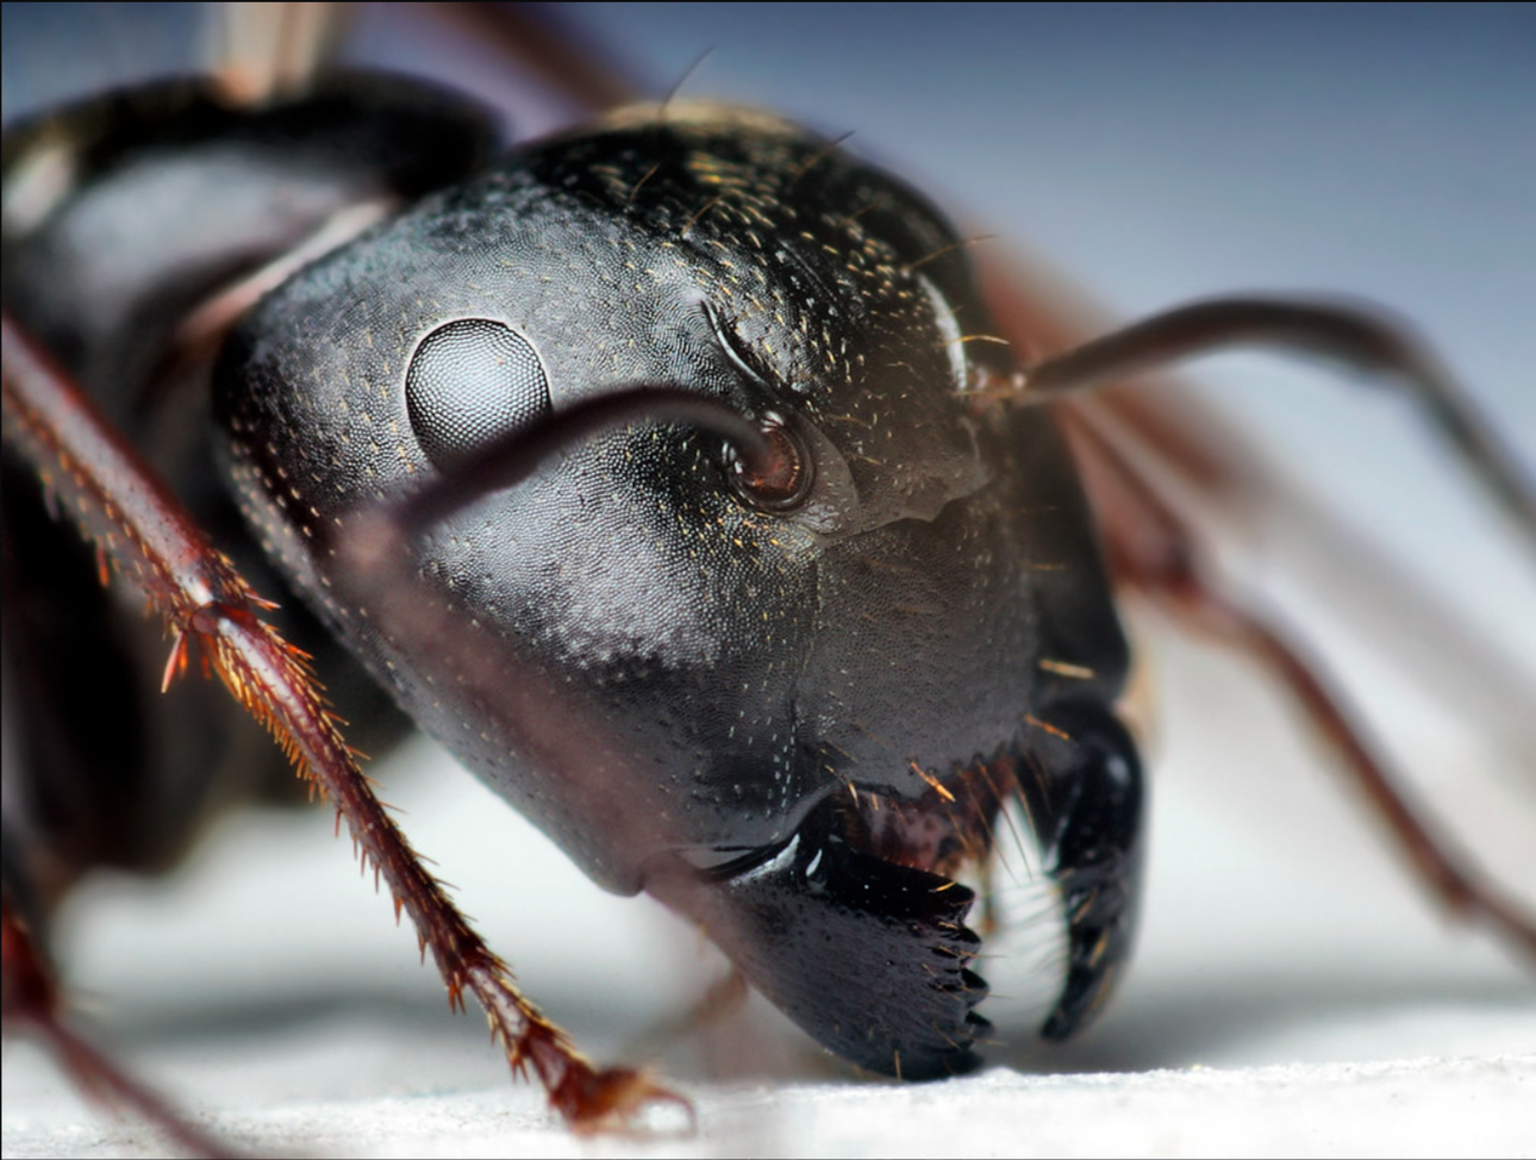 Sipelga lõugade harukordse tugevuse põhjus on selles olevad tsingiaatomid, mis kitiini koos valkudega muudavad samalaadselt struktuurseks, nagu seda on Damaskuse või samuraimõõga teraski. Ainult nanoskaalal.